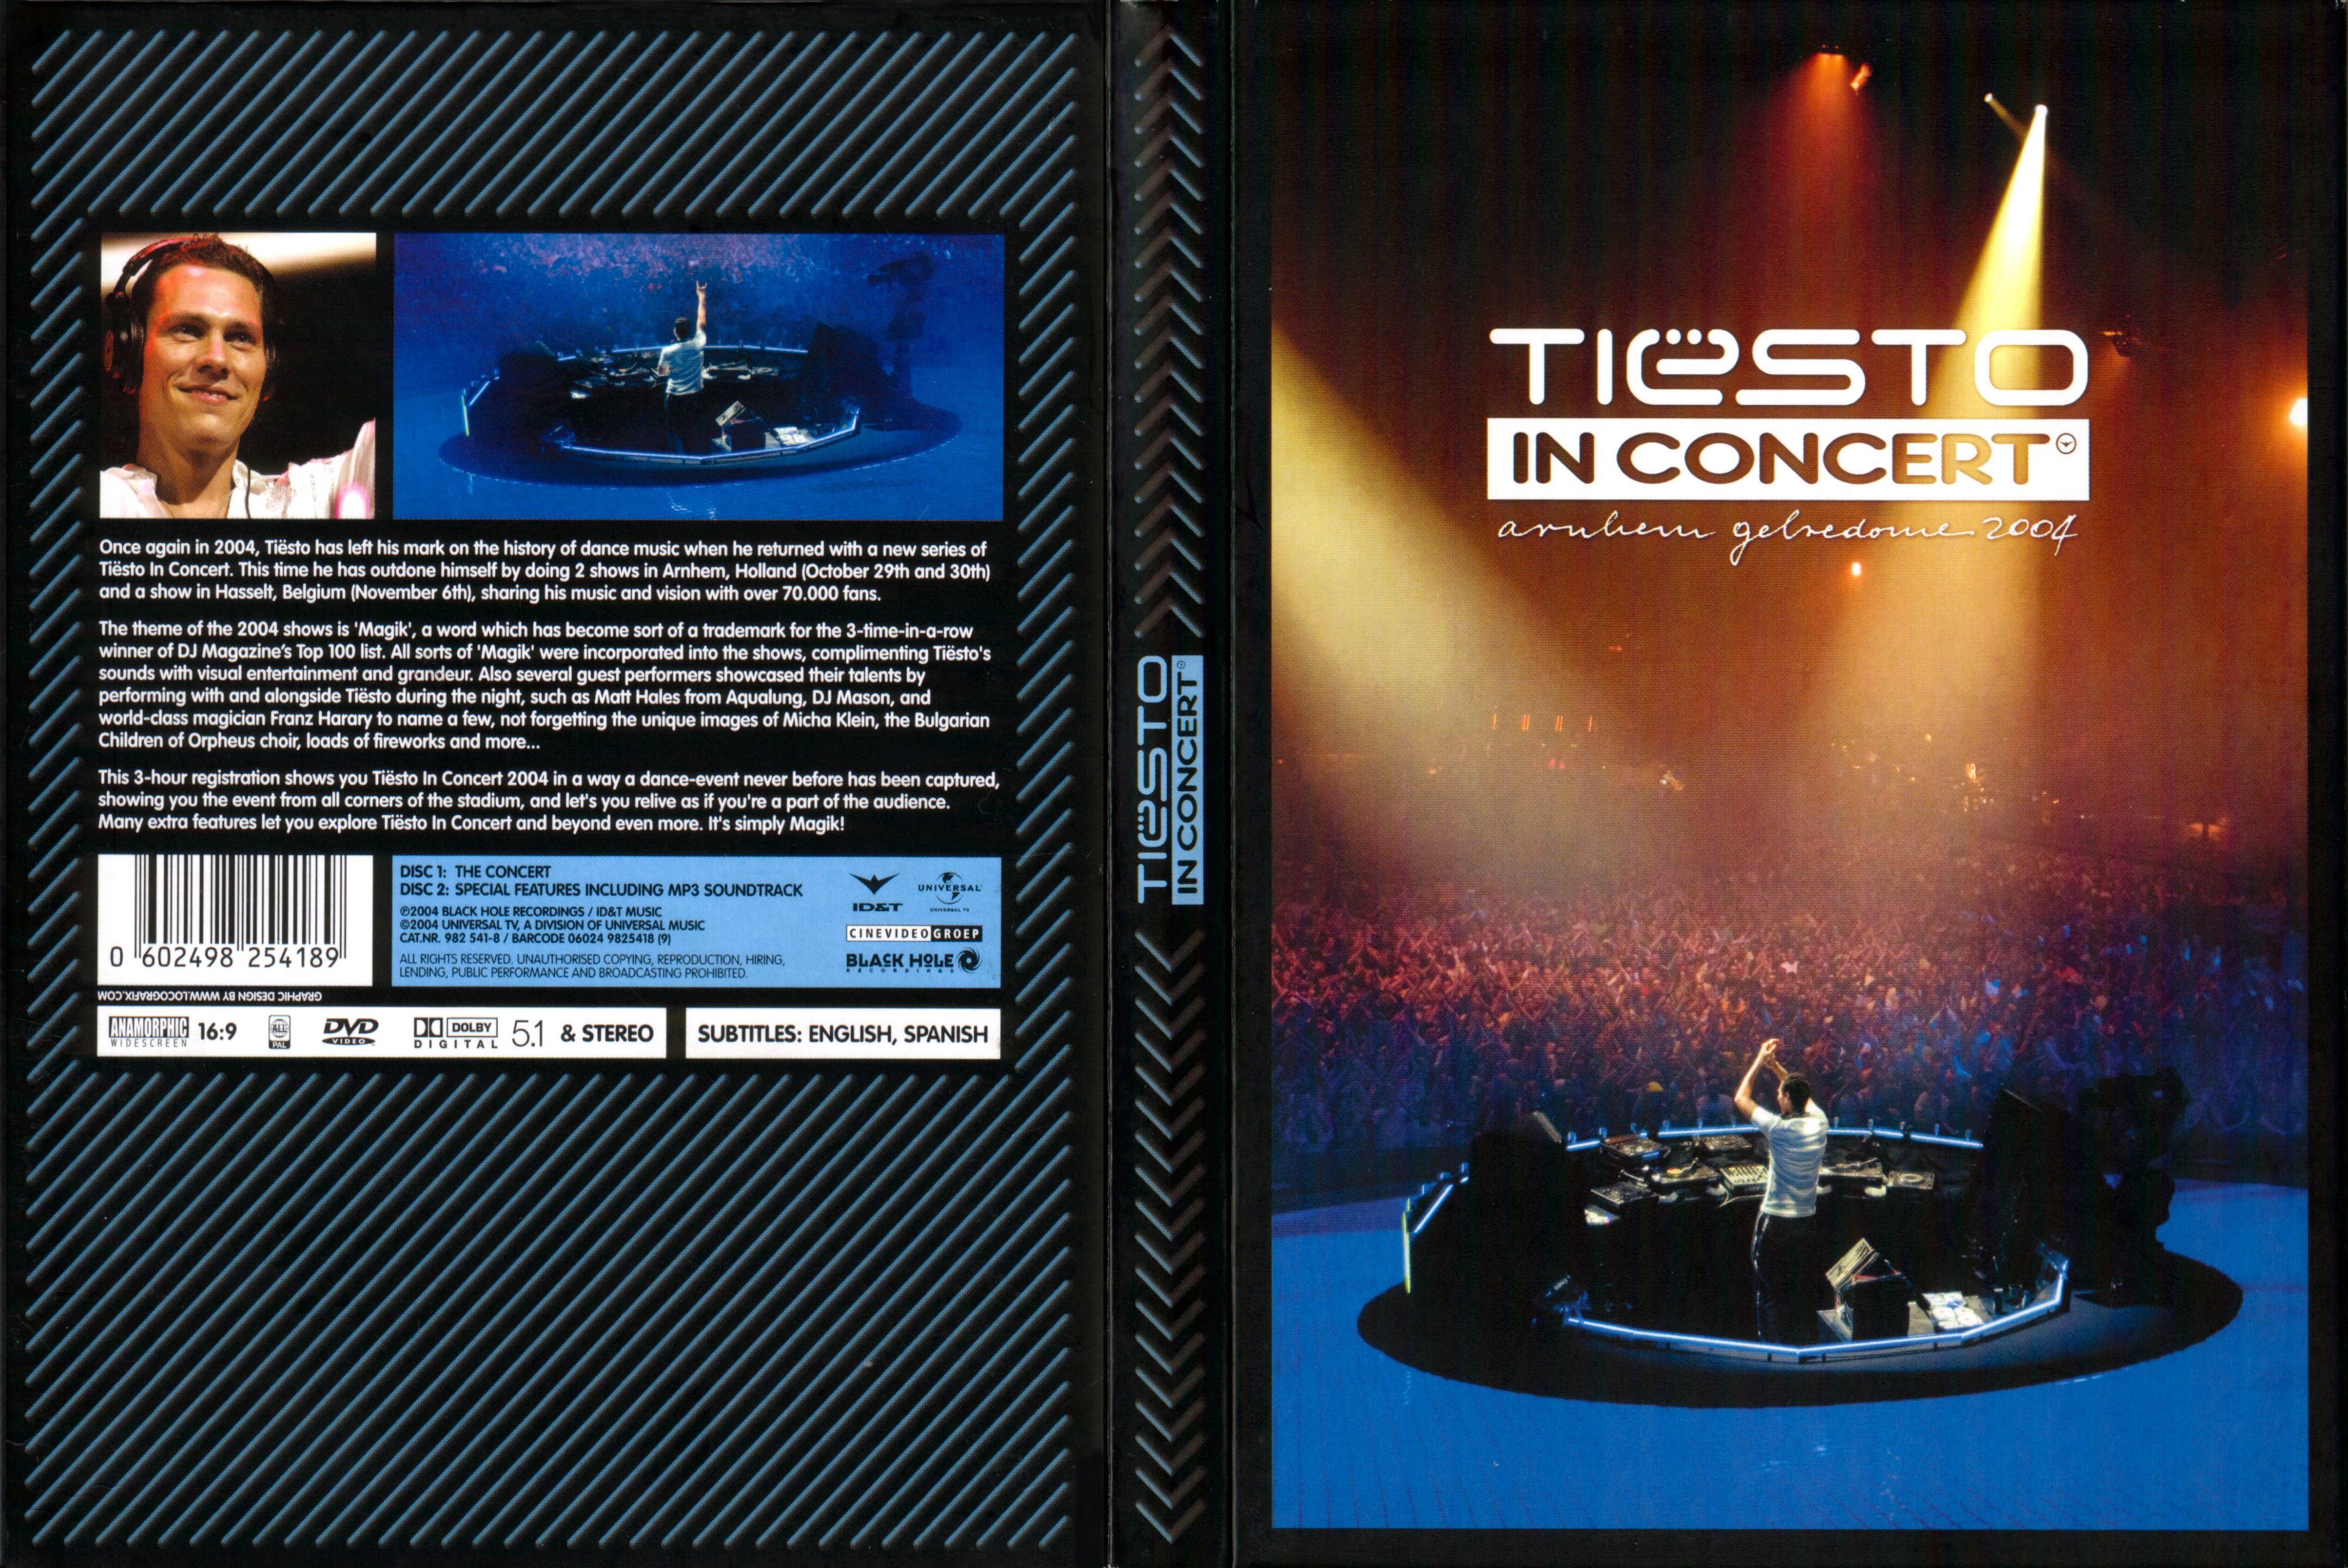 Jaquette DVD Tiesto in concert